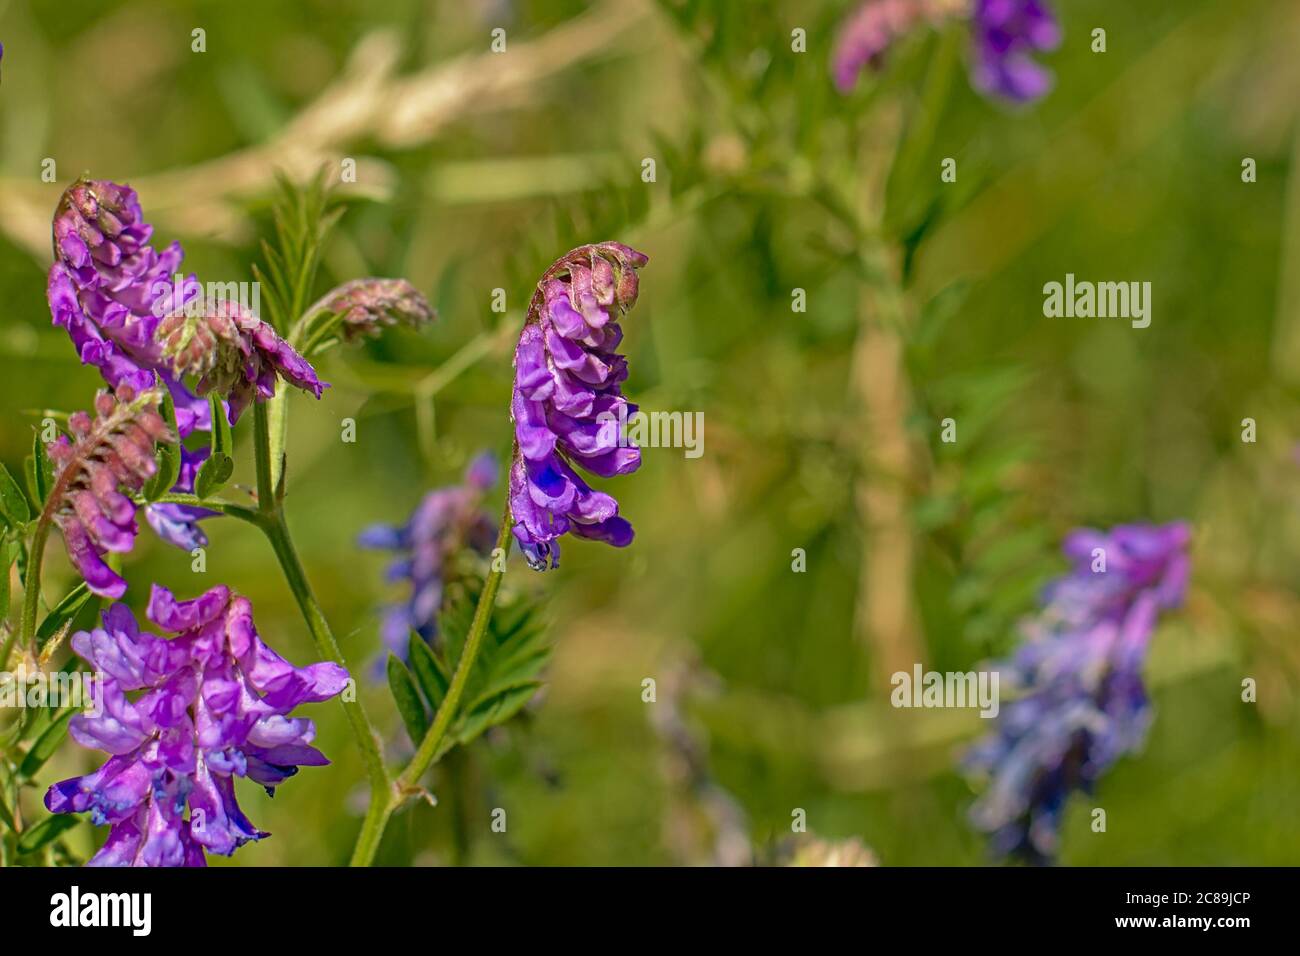 bright purple vetch flowers in a green field, selective focus - Vicia villosa Stock Photo